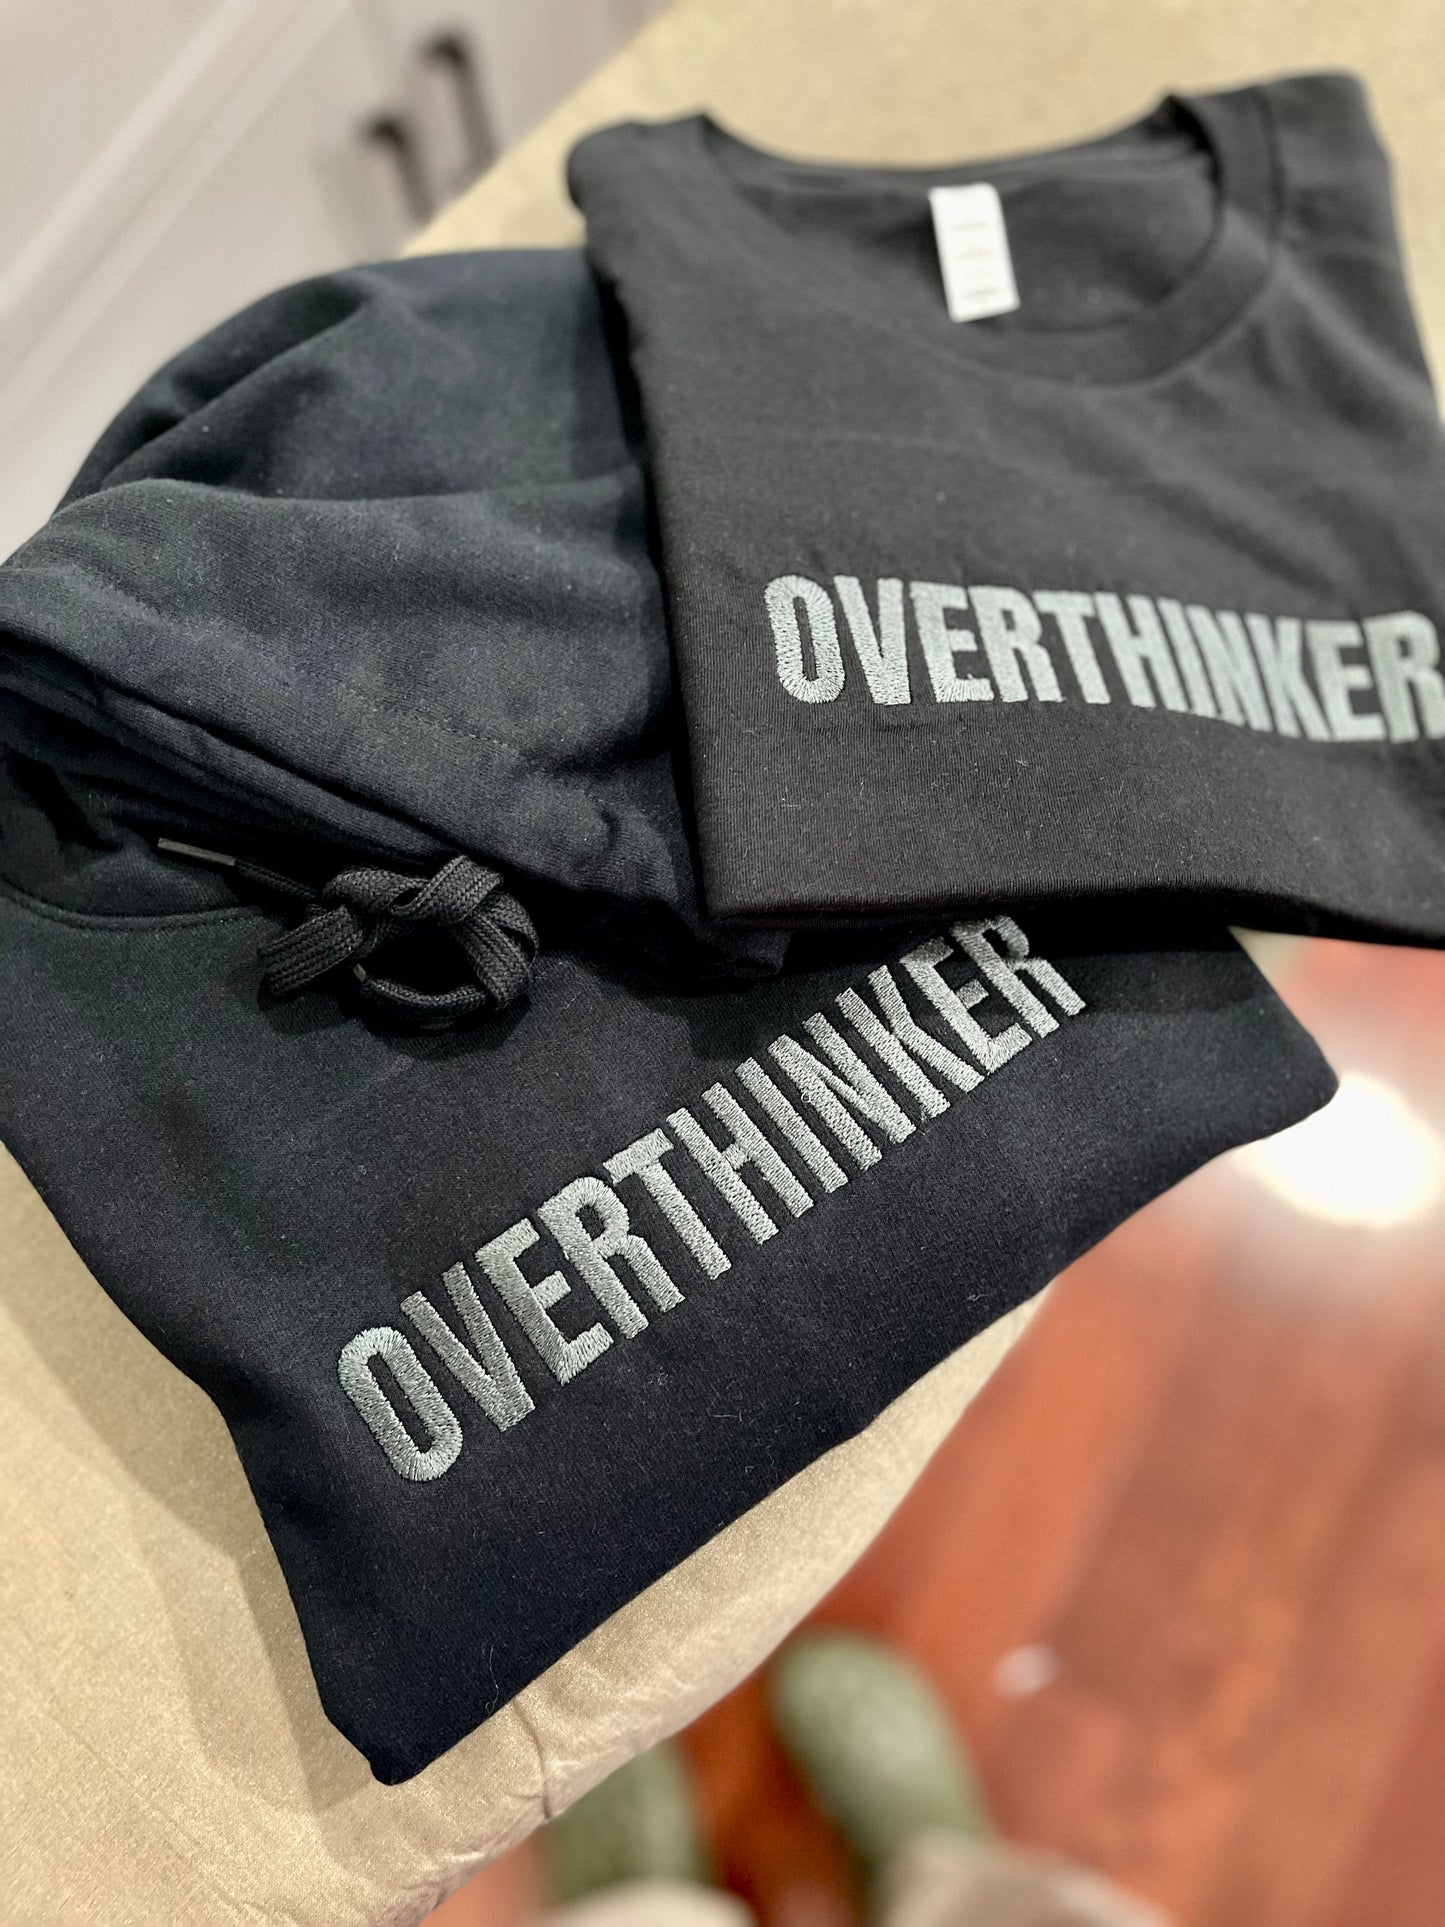 Overthinker - Homebody